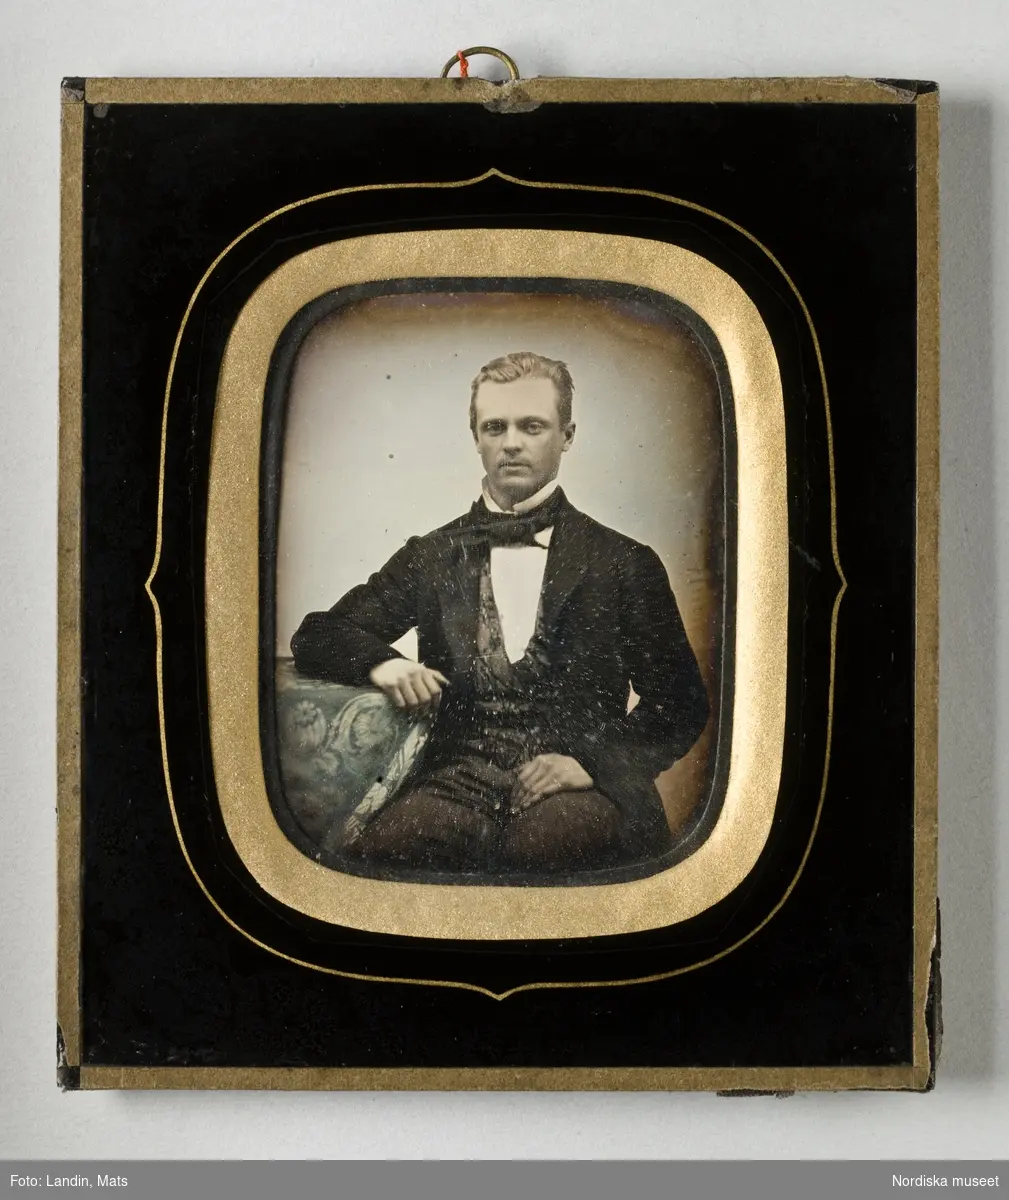 Porträtt av professor Frithiof Holmgren (1831–1897). Kolorerad dagerrotyp / daguerreotyp.  Nordiska museet inv.nr 85042.
-
Portrait of professor Frithiof Holmgren (1831–1897). Sixth-plate daguerreotype.